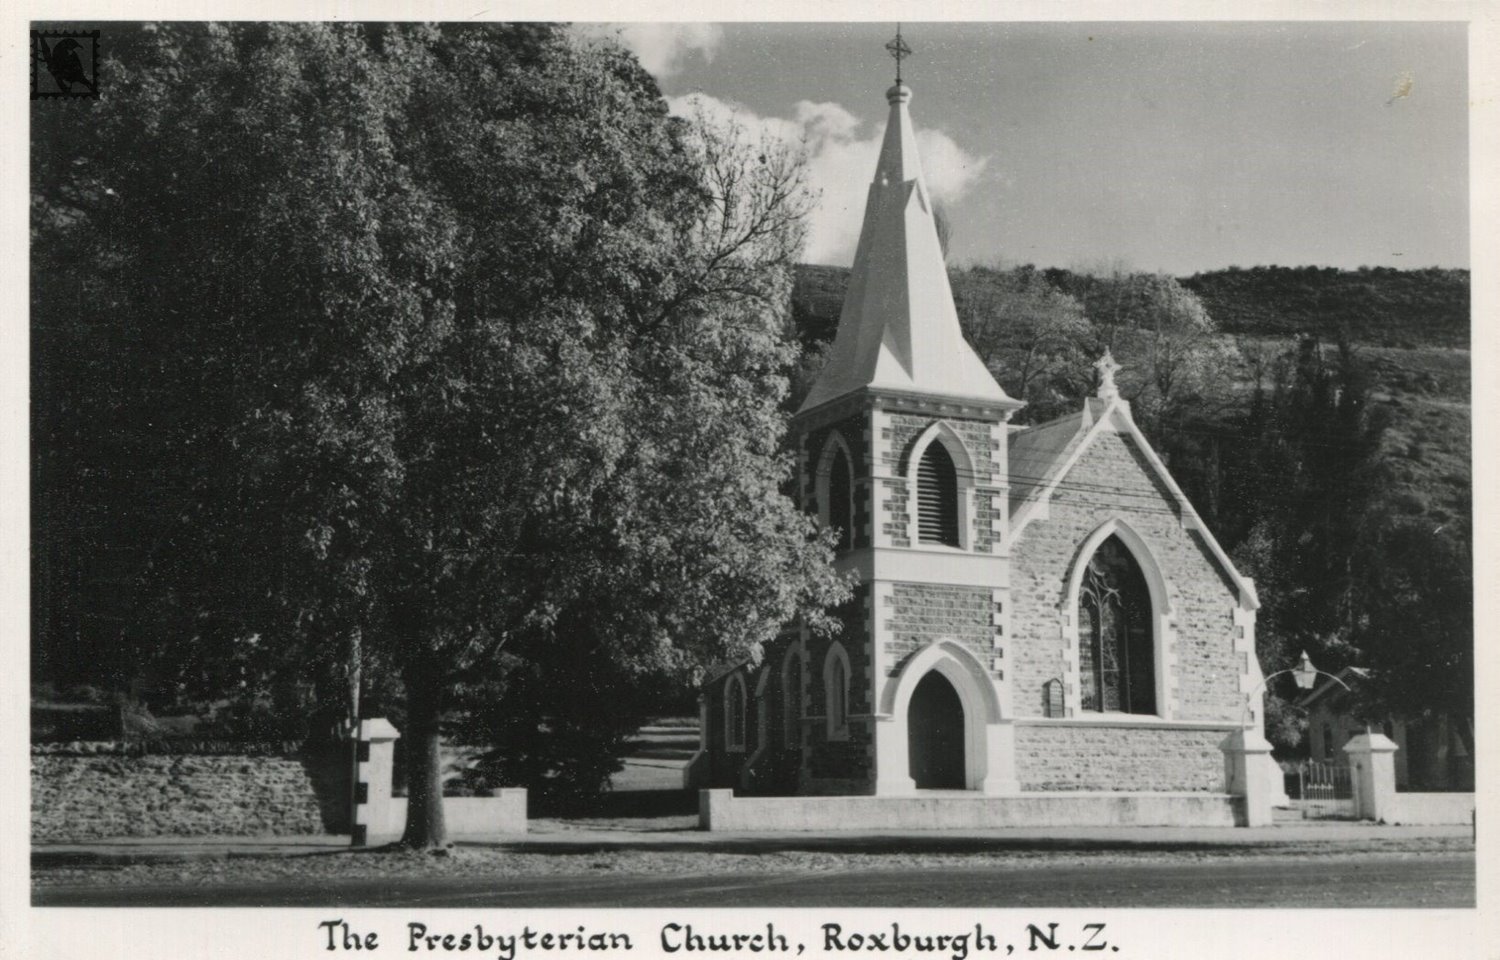 Roxburgh-The Presbyterian Church